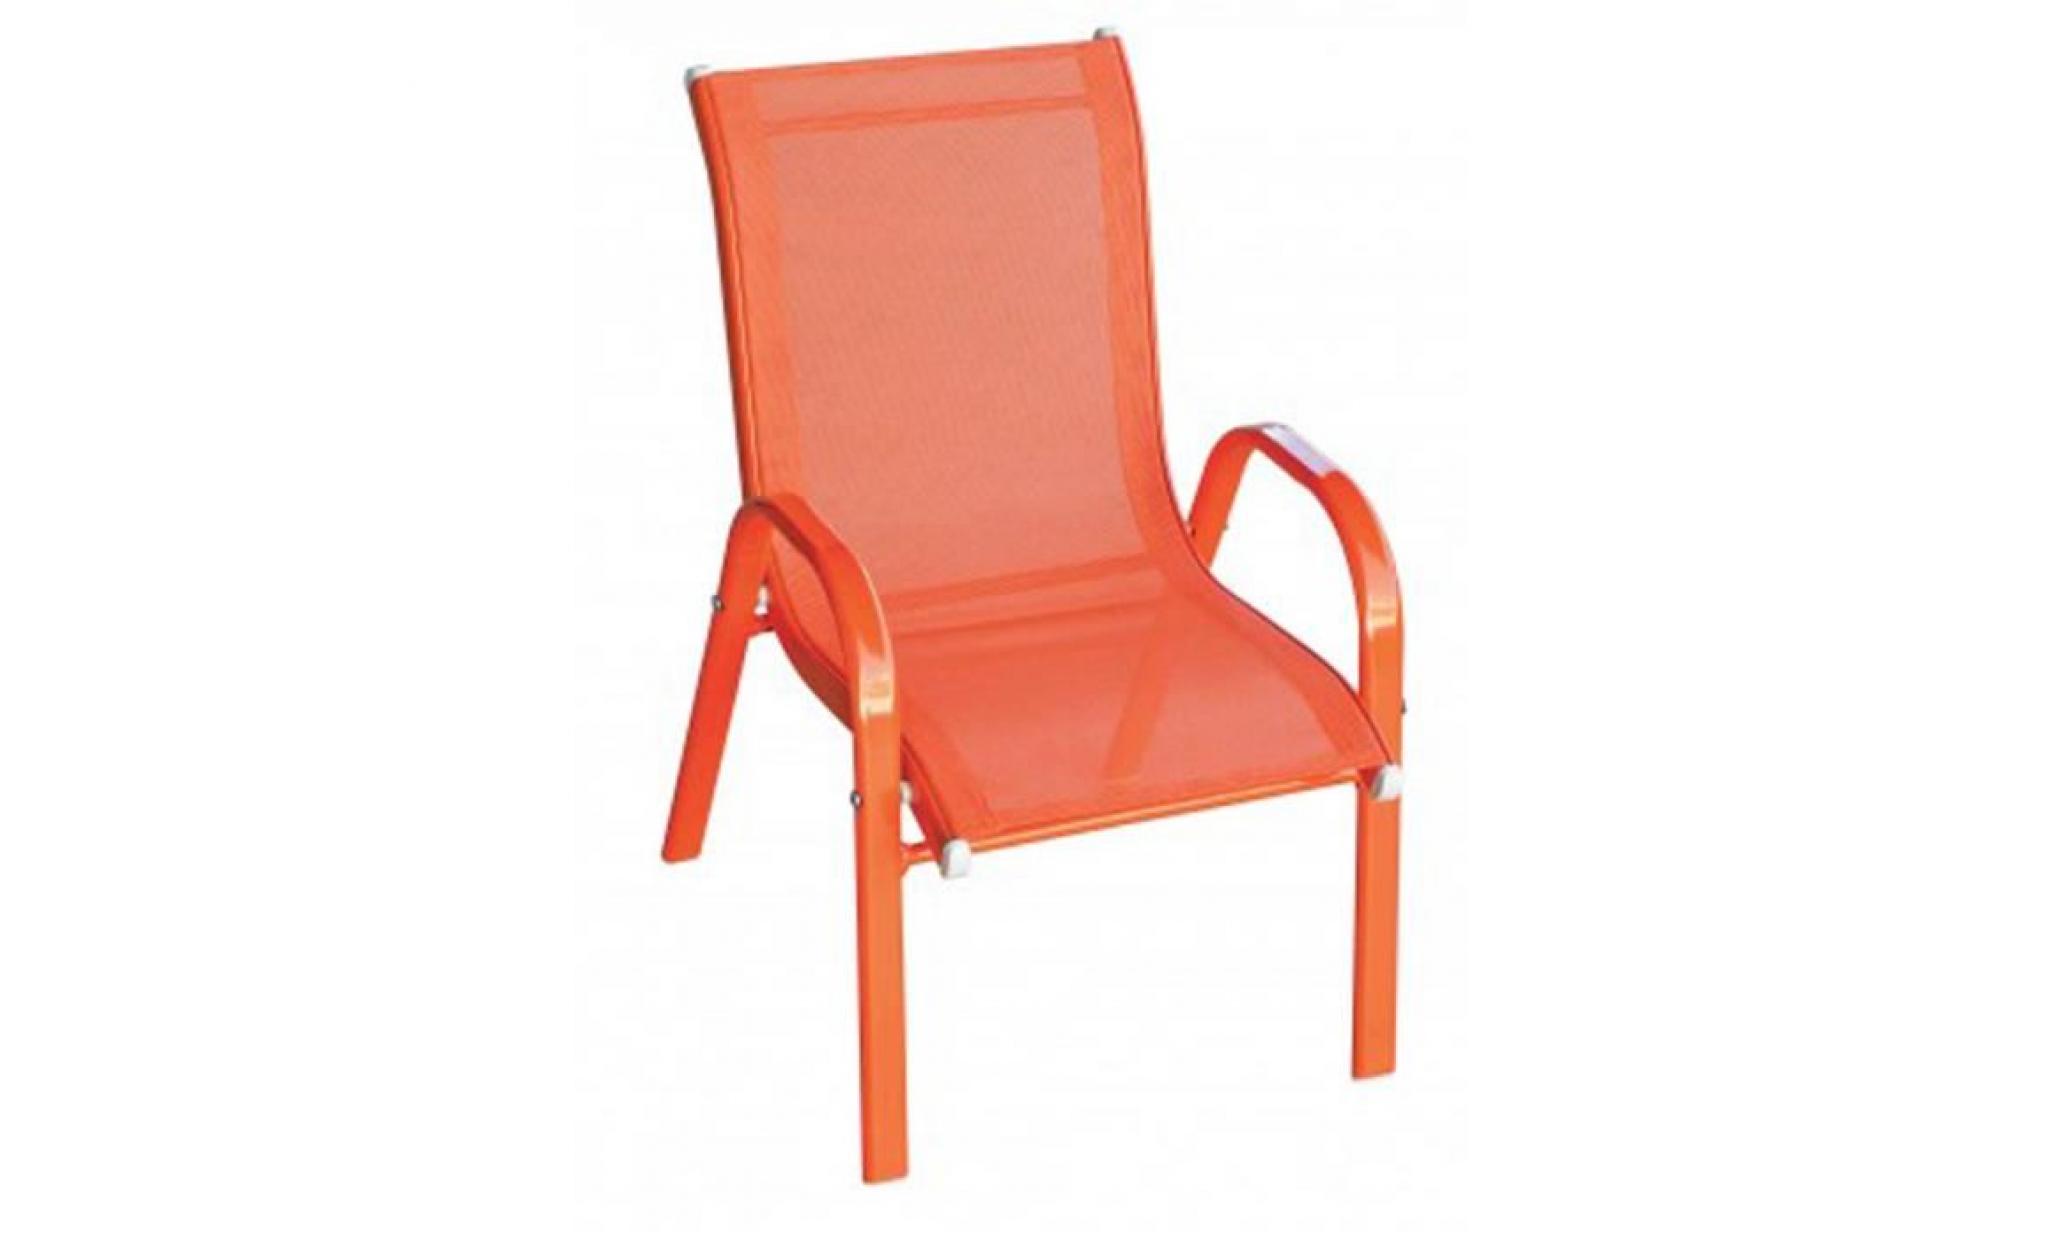 fauteuil enfant en texaline coloris orange   dim : 36 x 49 x 59 cm